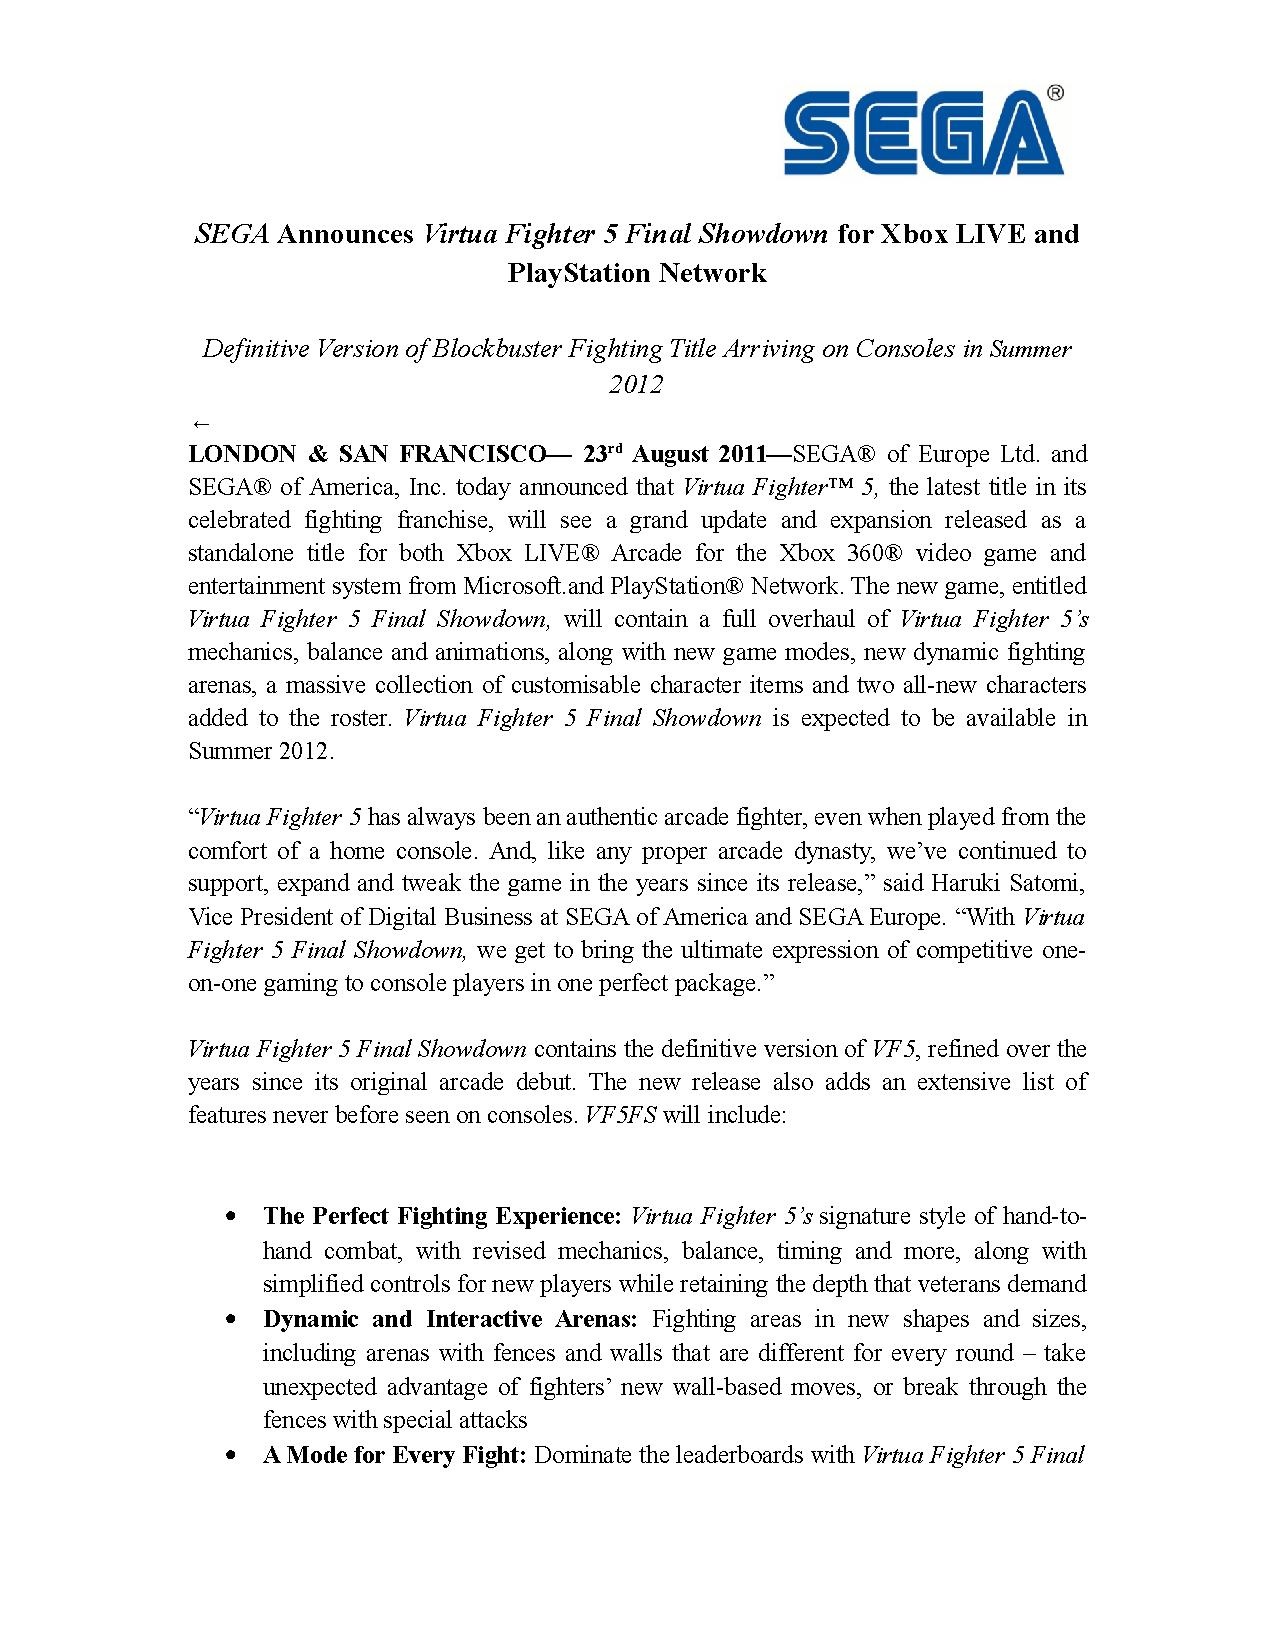 VF5 FS Announcement.pdf